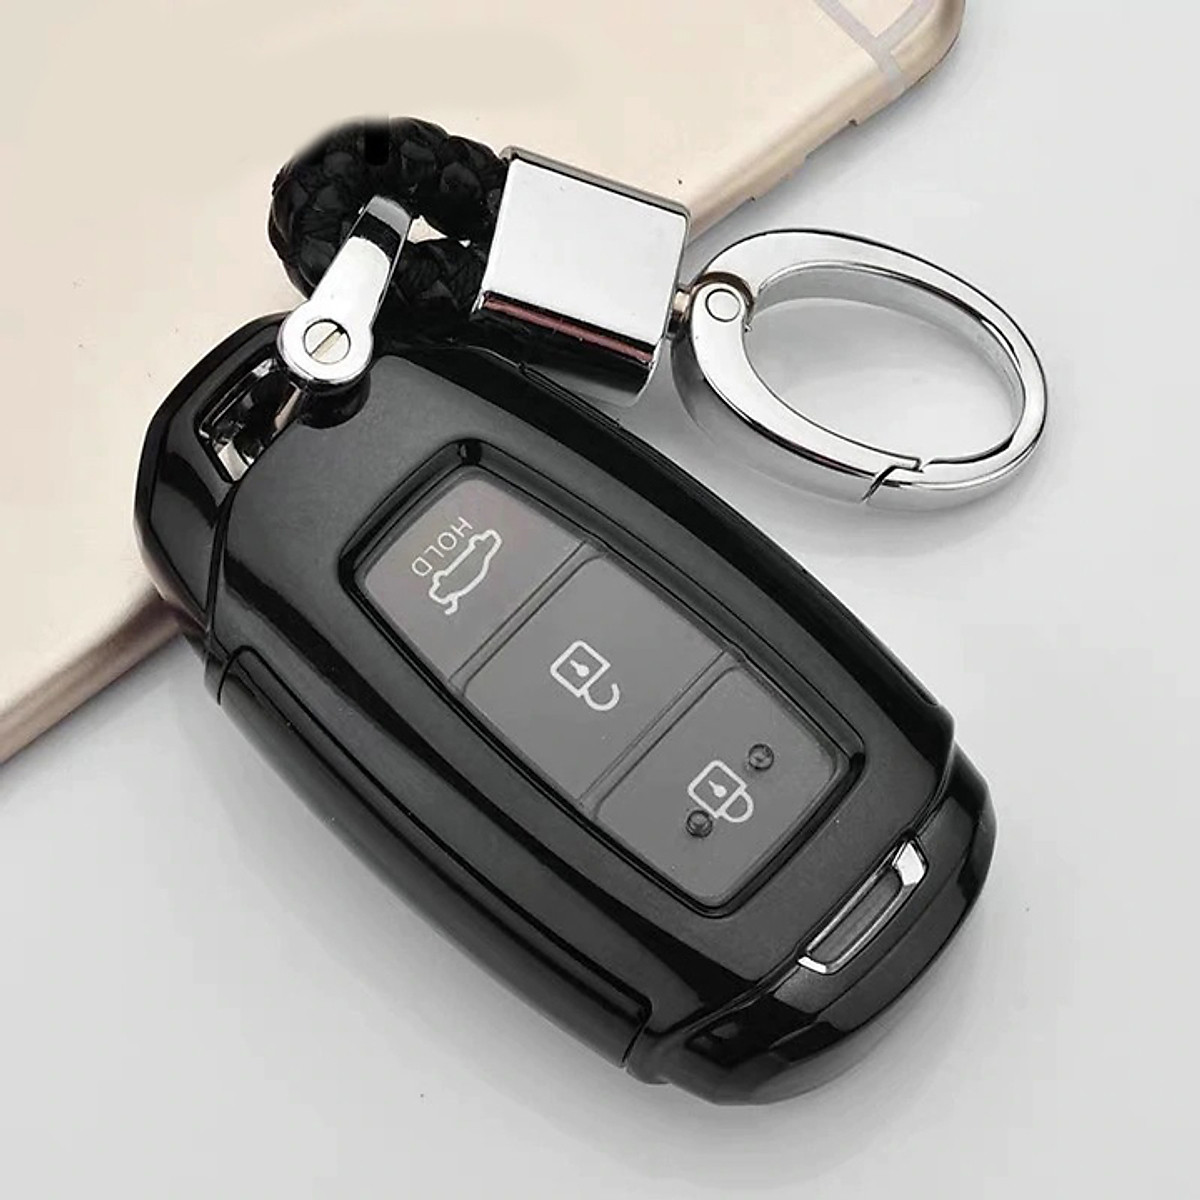 Chìa khóa thông minh xe ô tô hoạt động như thế nào  Làm khóa ô tô Hà Nội  chìa smartkey remote thông minh